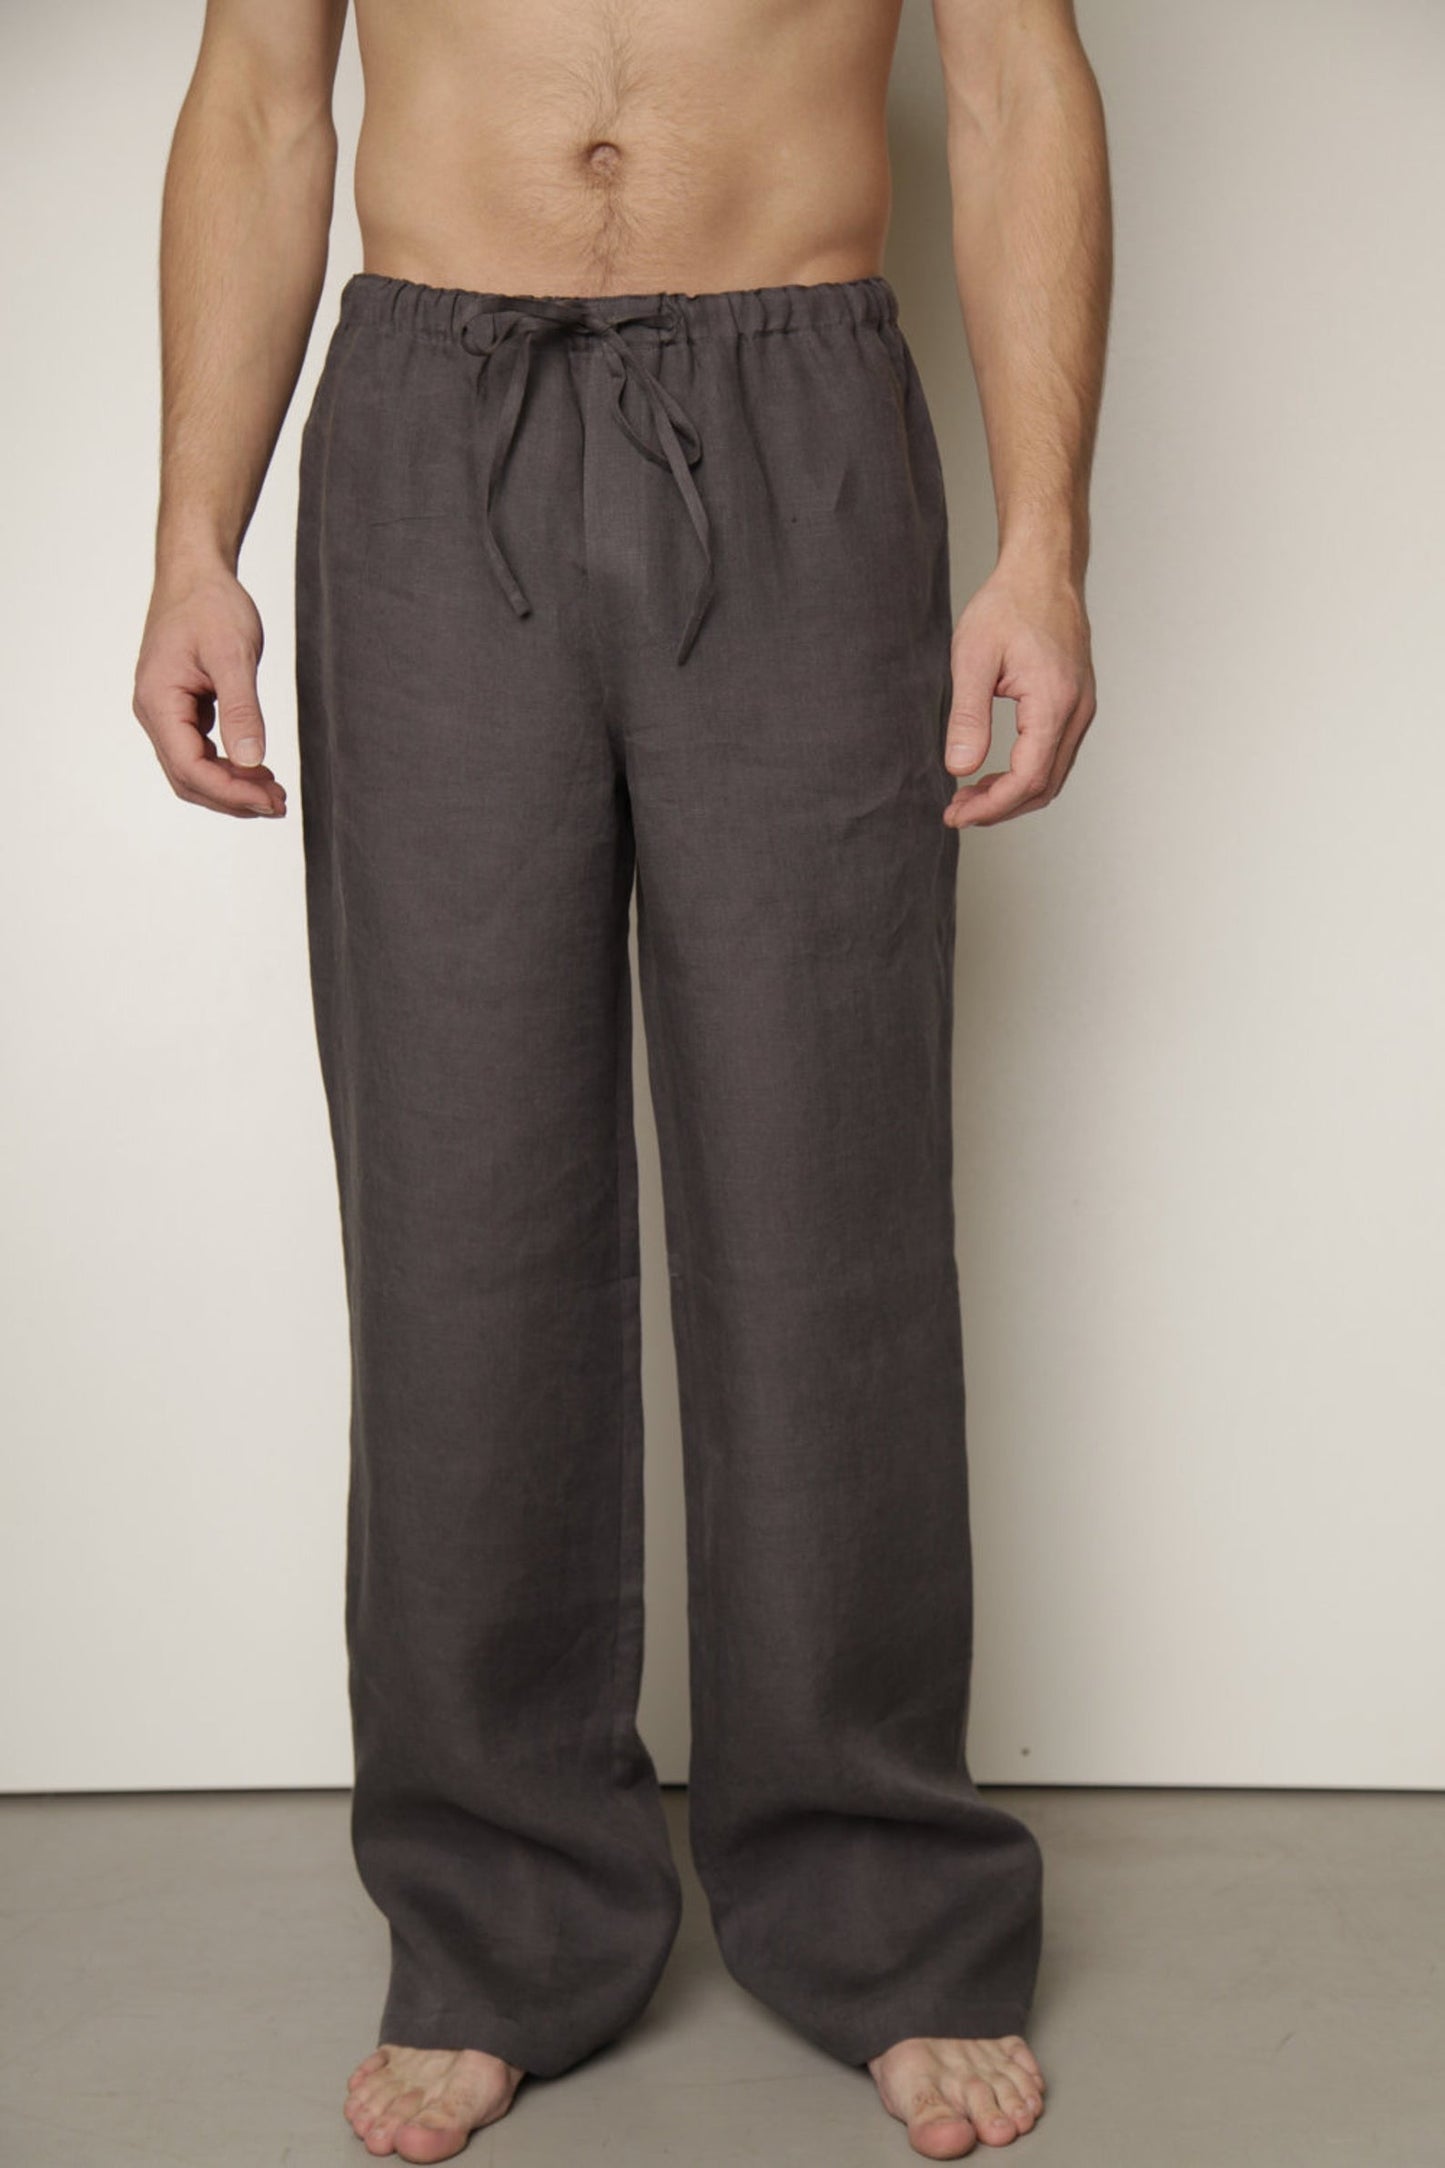 Linen Men's Pajama Pants with Open Front Fly/ Linen Men's Loungewear